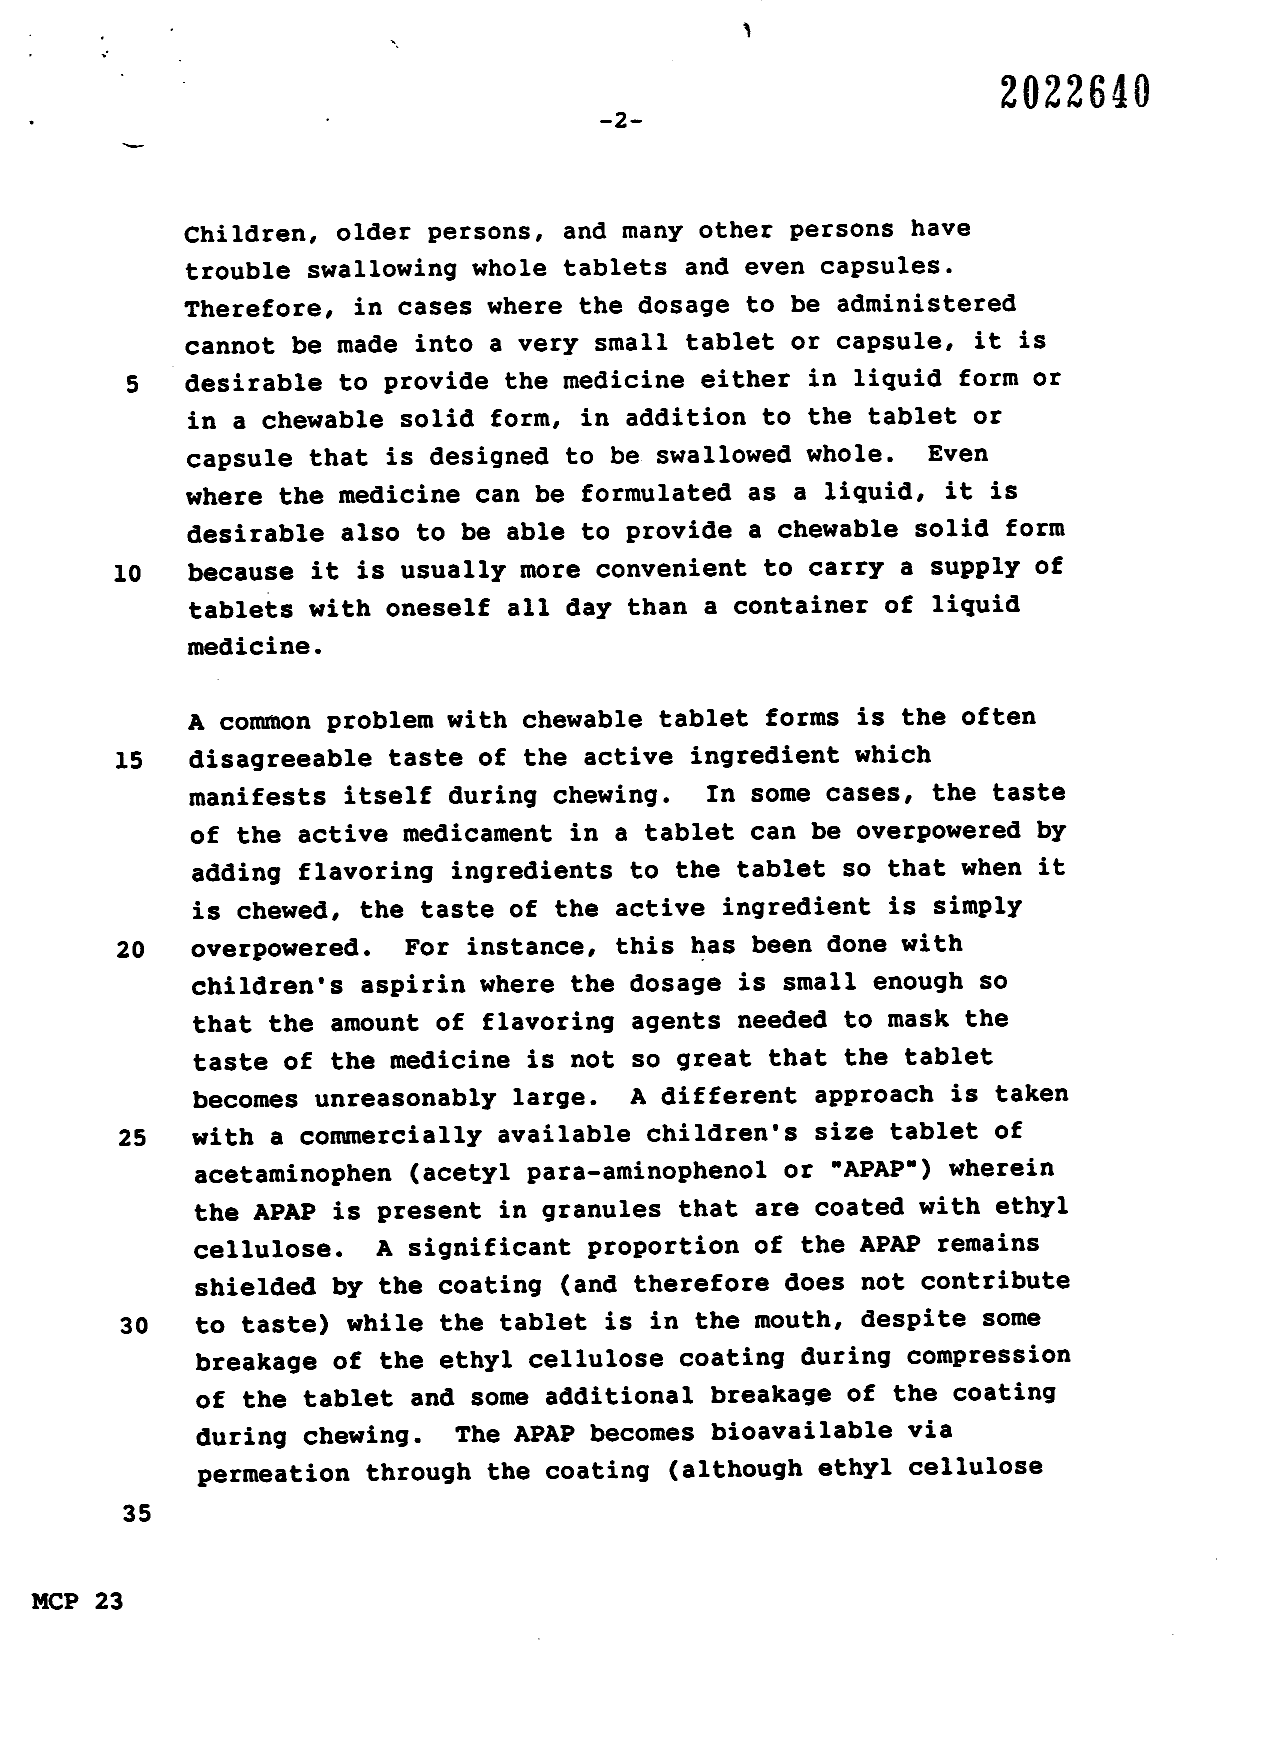 Document de brevet canadien 2022640. Description 19961211. Image 2 de 19